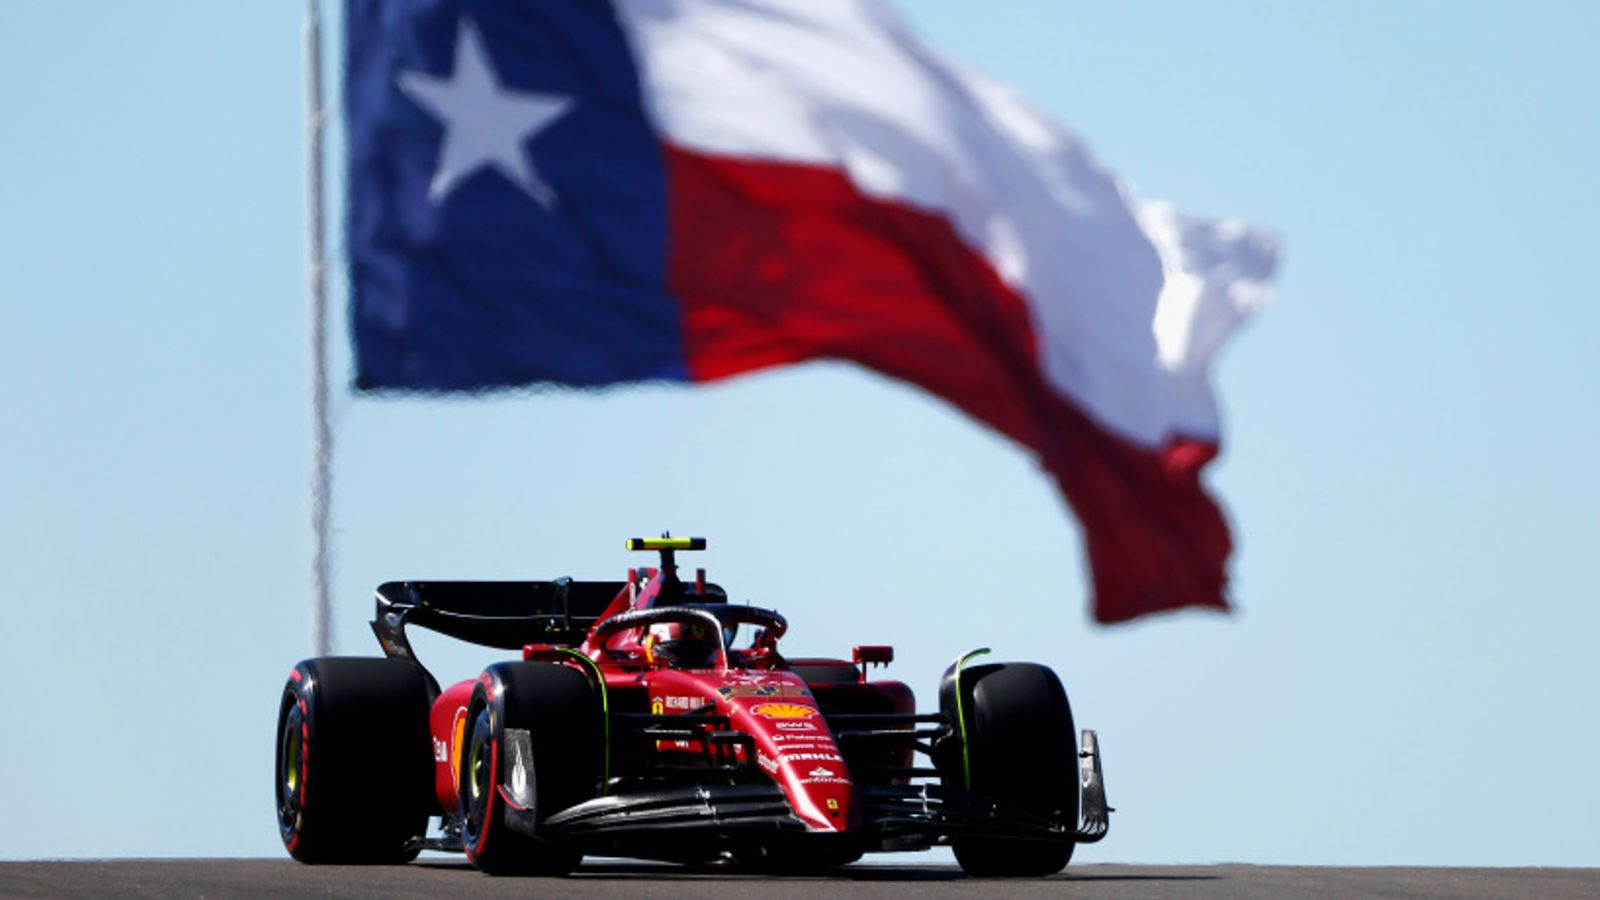 GP de Estados Unidos: Carlos Sainz supera a Max Verstappen en el Practice One y lidera el cronograma